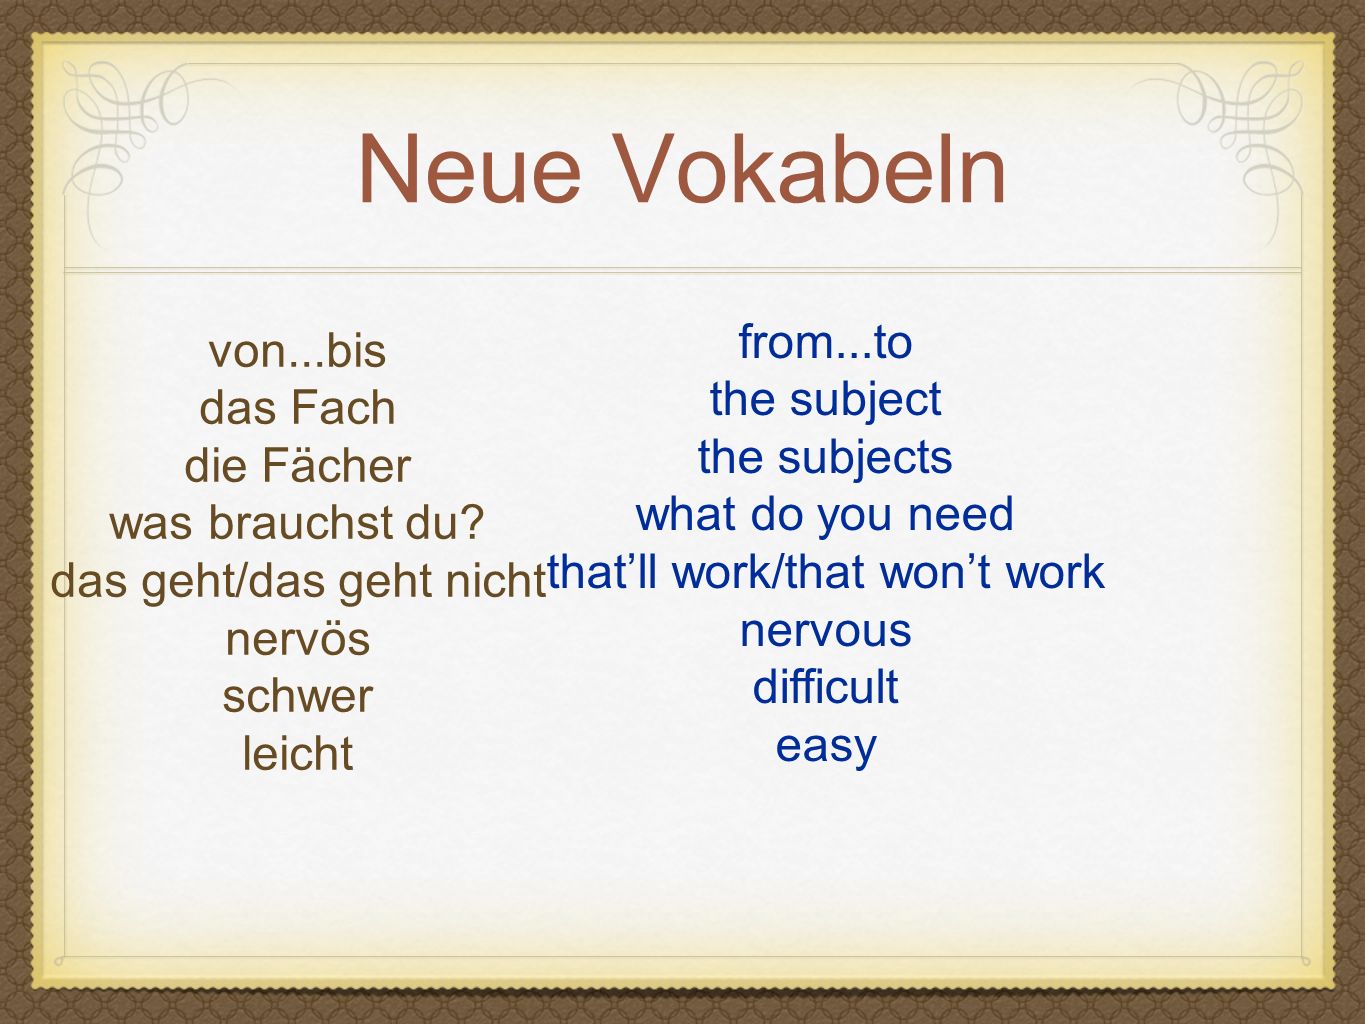 Neue Vokabeln from...to von...bis the subject das Fach the subjects